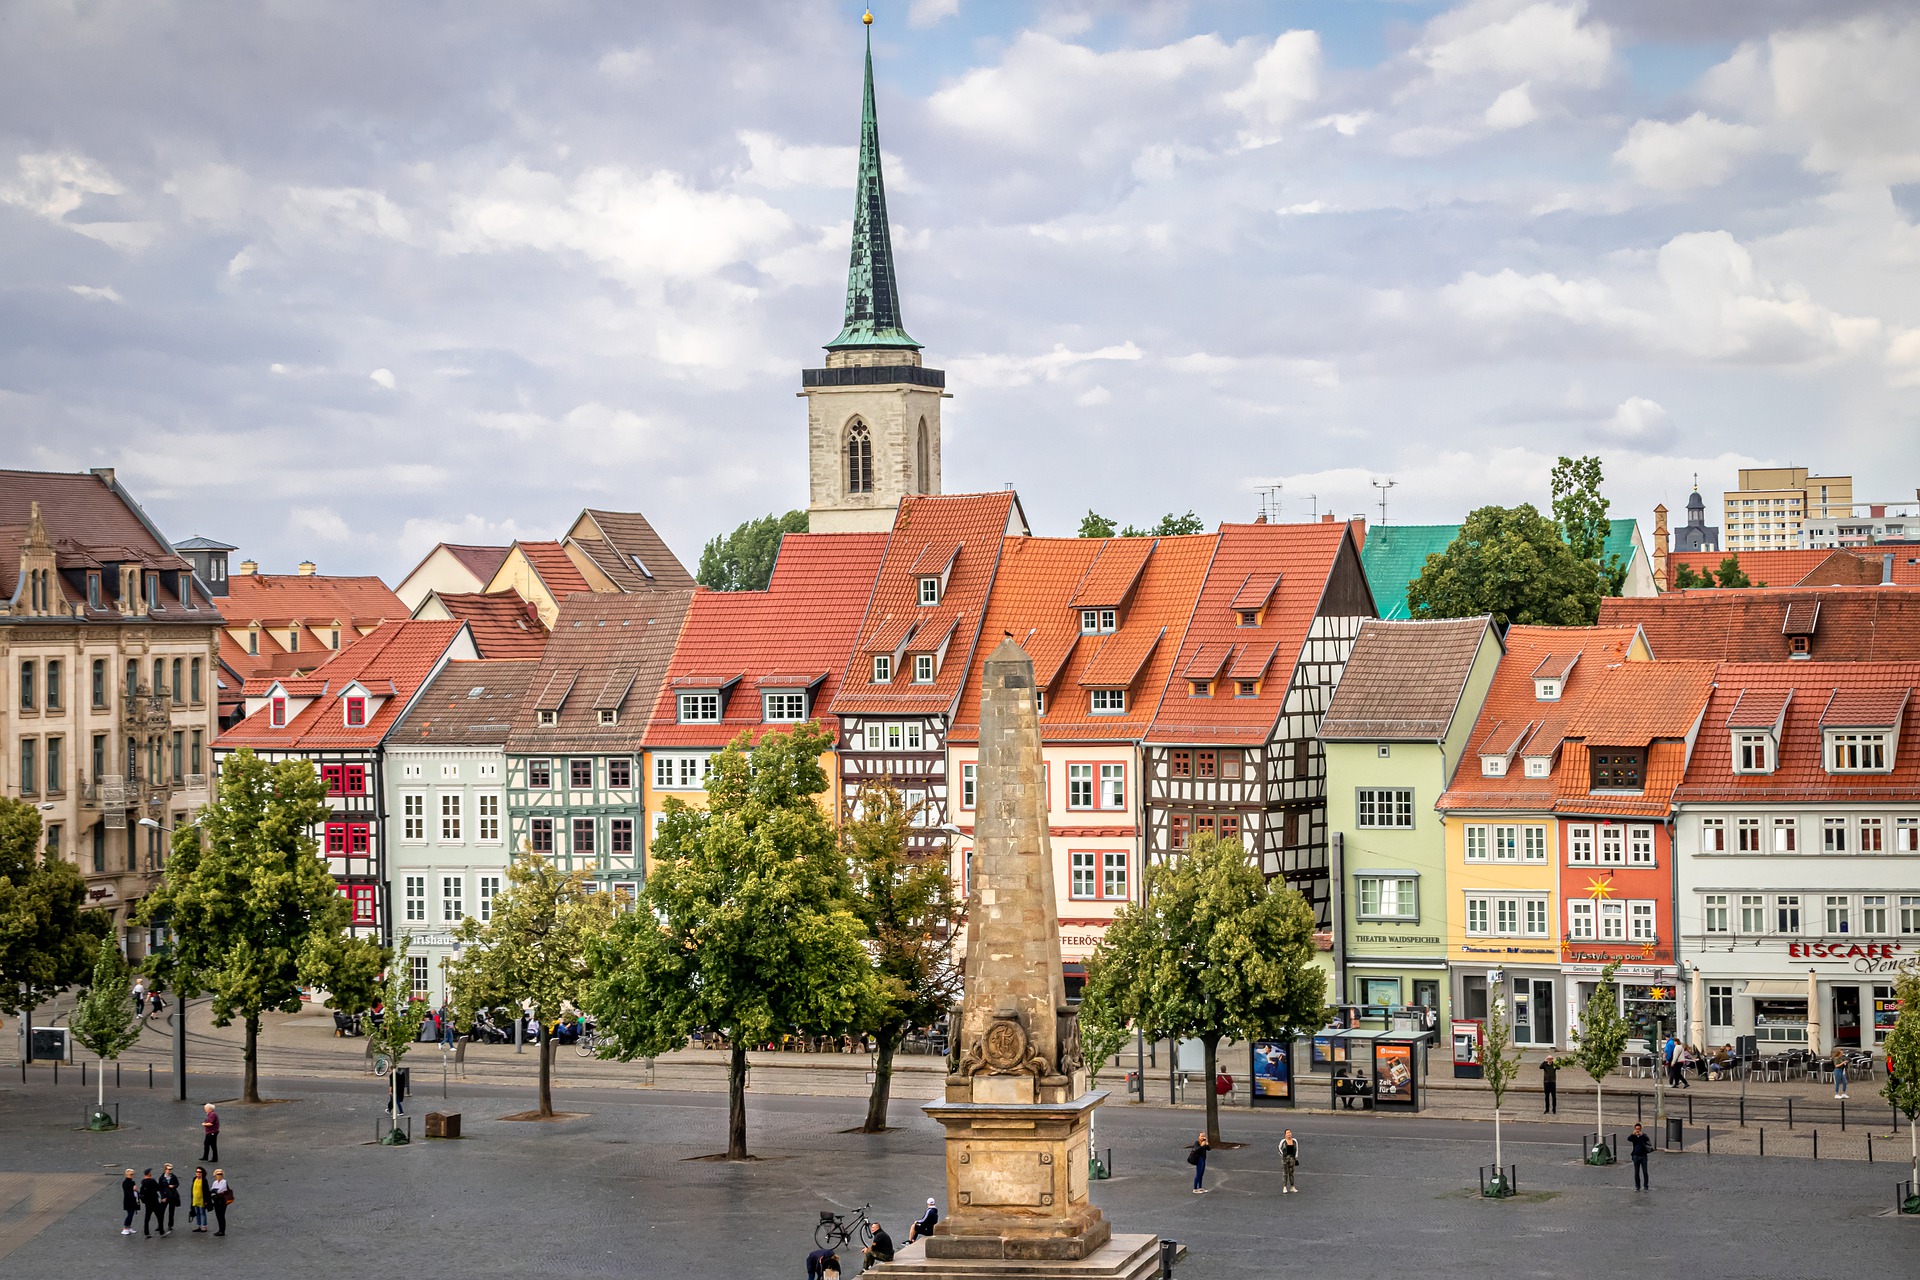 Der Domplatz in Erfurt mit roten Zinnen und Fachwerkhäusern. Im Hintergrund sieht man eine Kirche. 